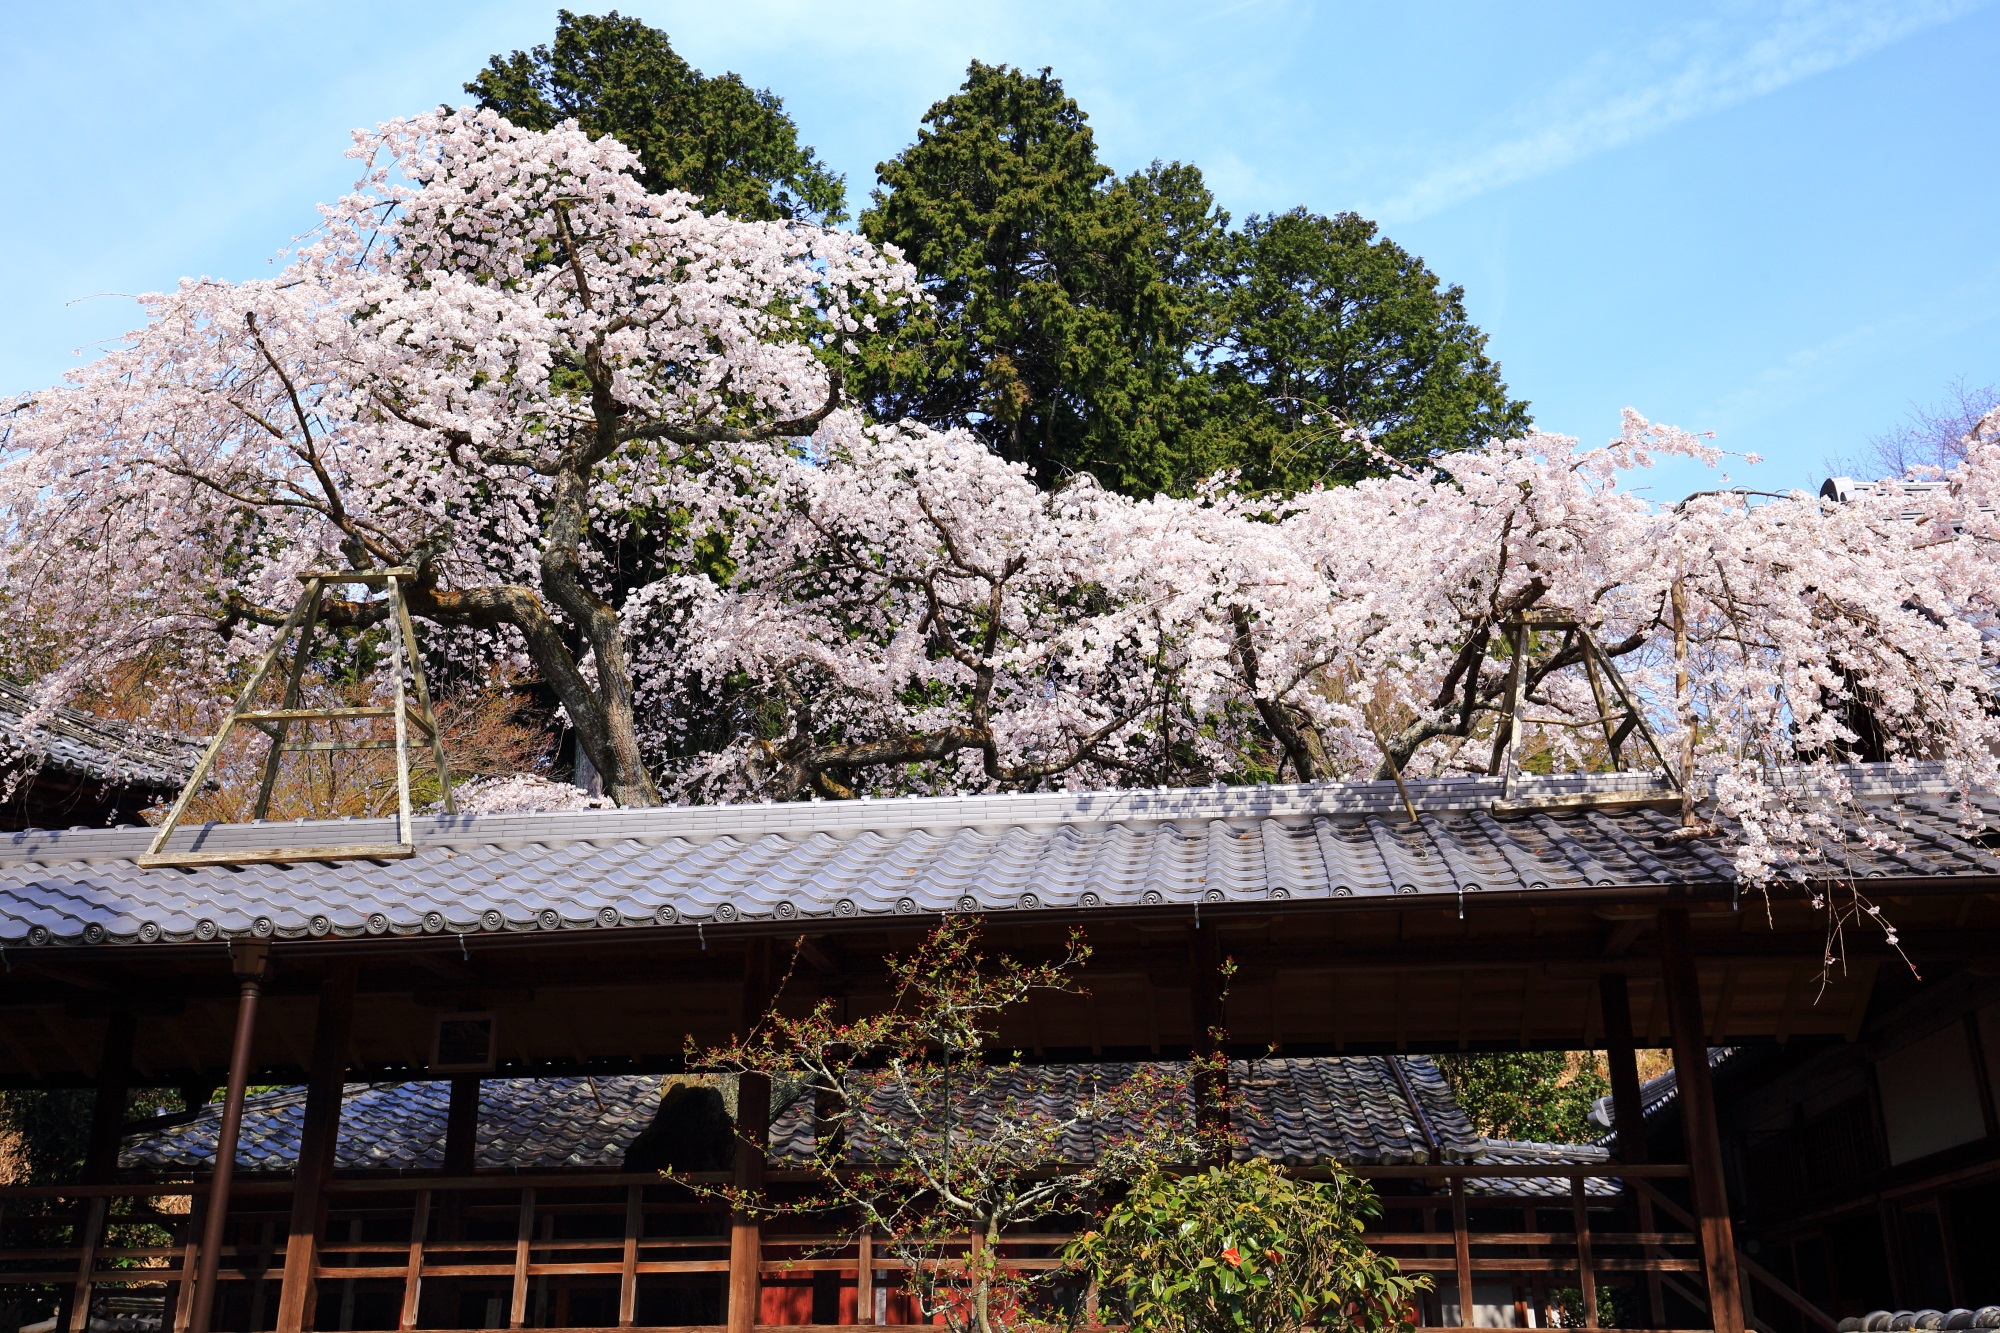 「なりひら桜」と名付けられた十輪寺のしだれ桜